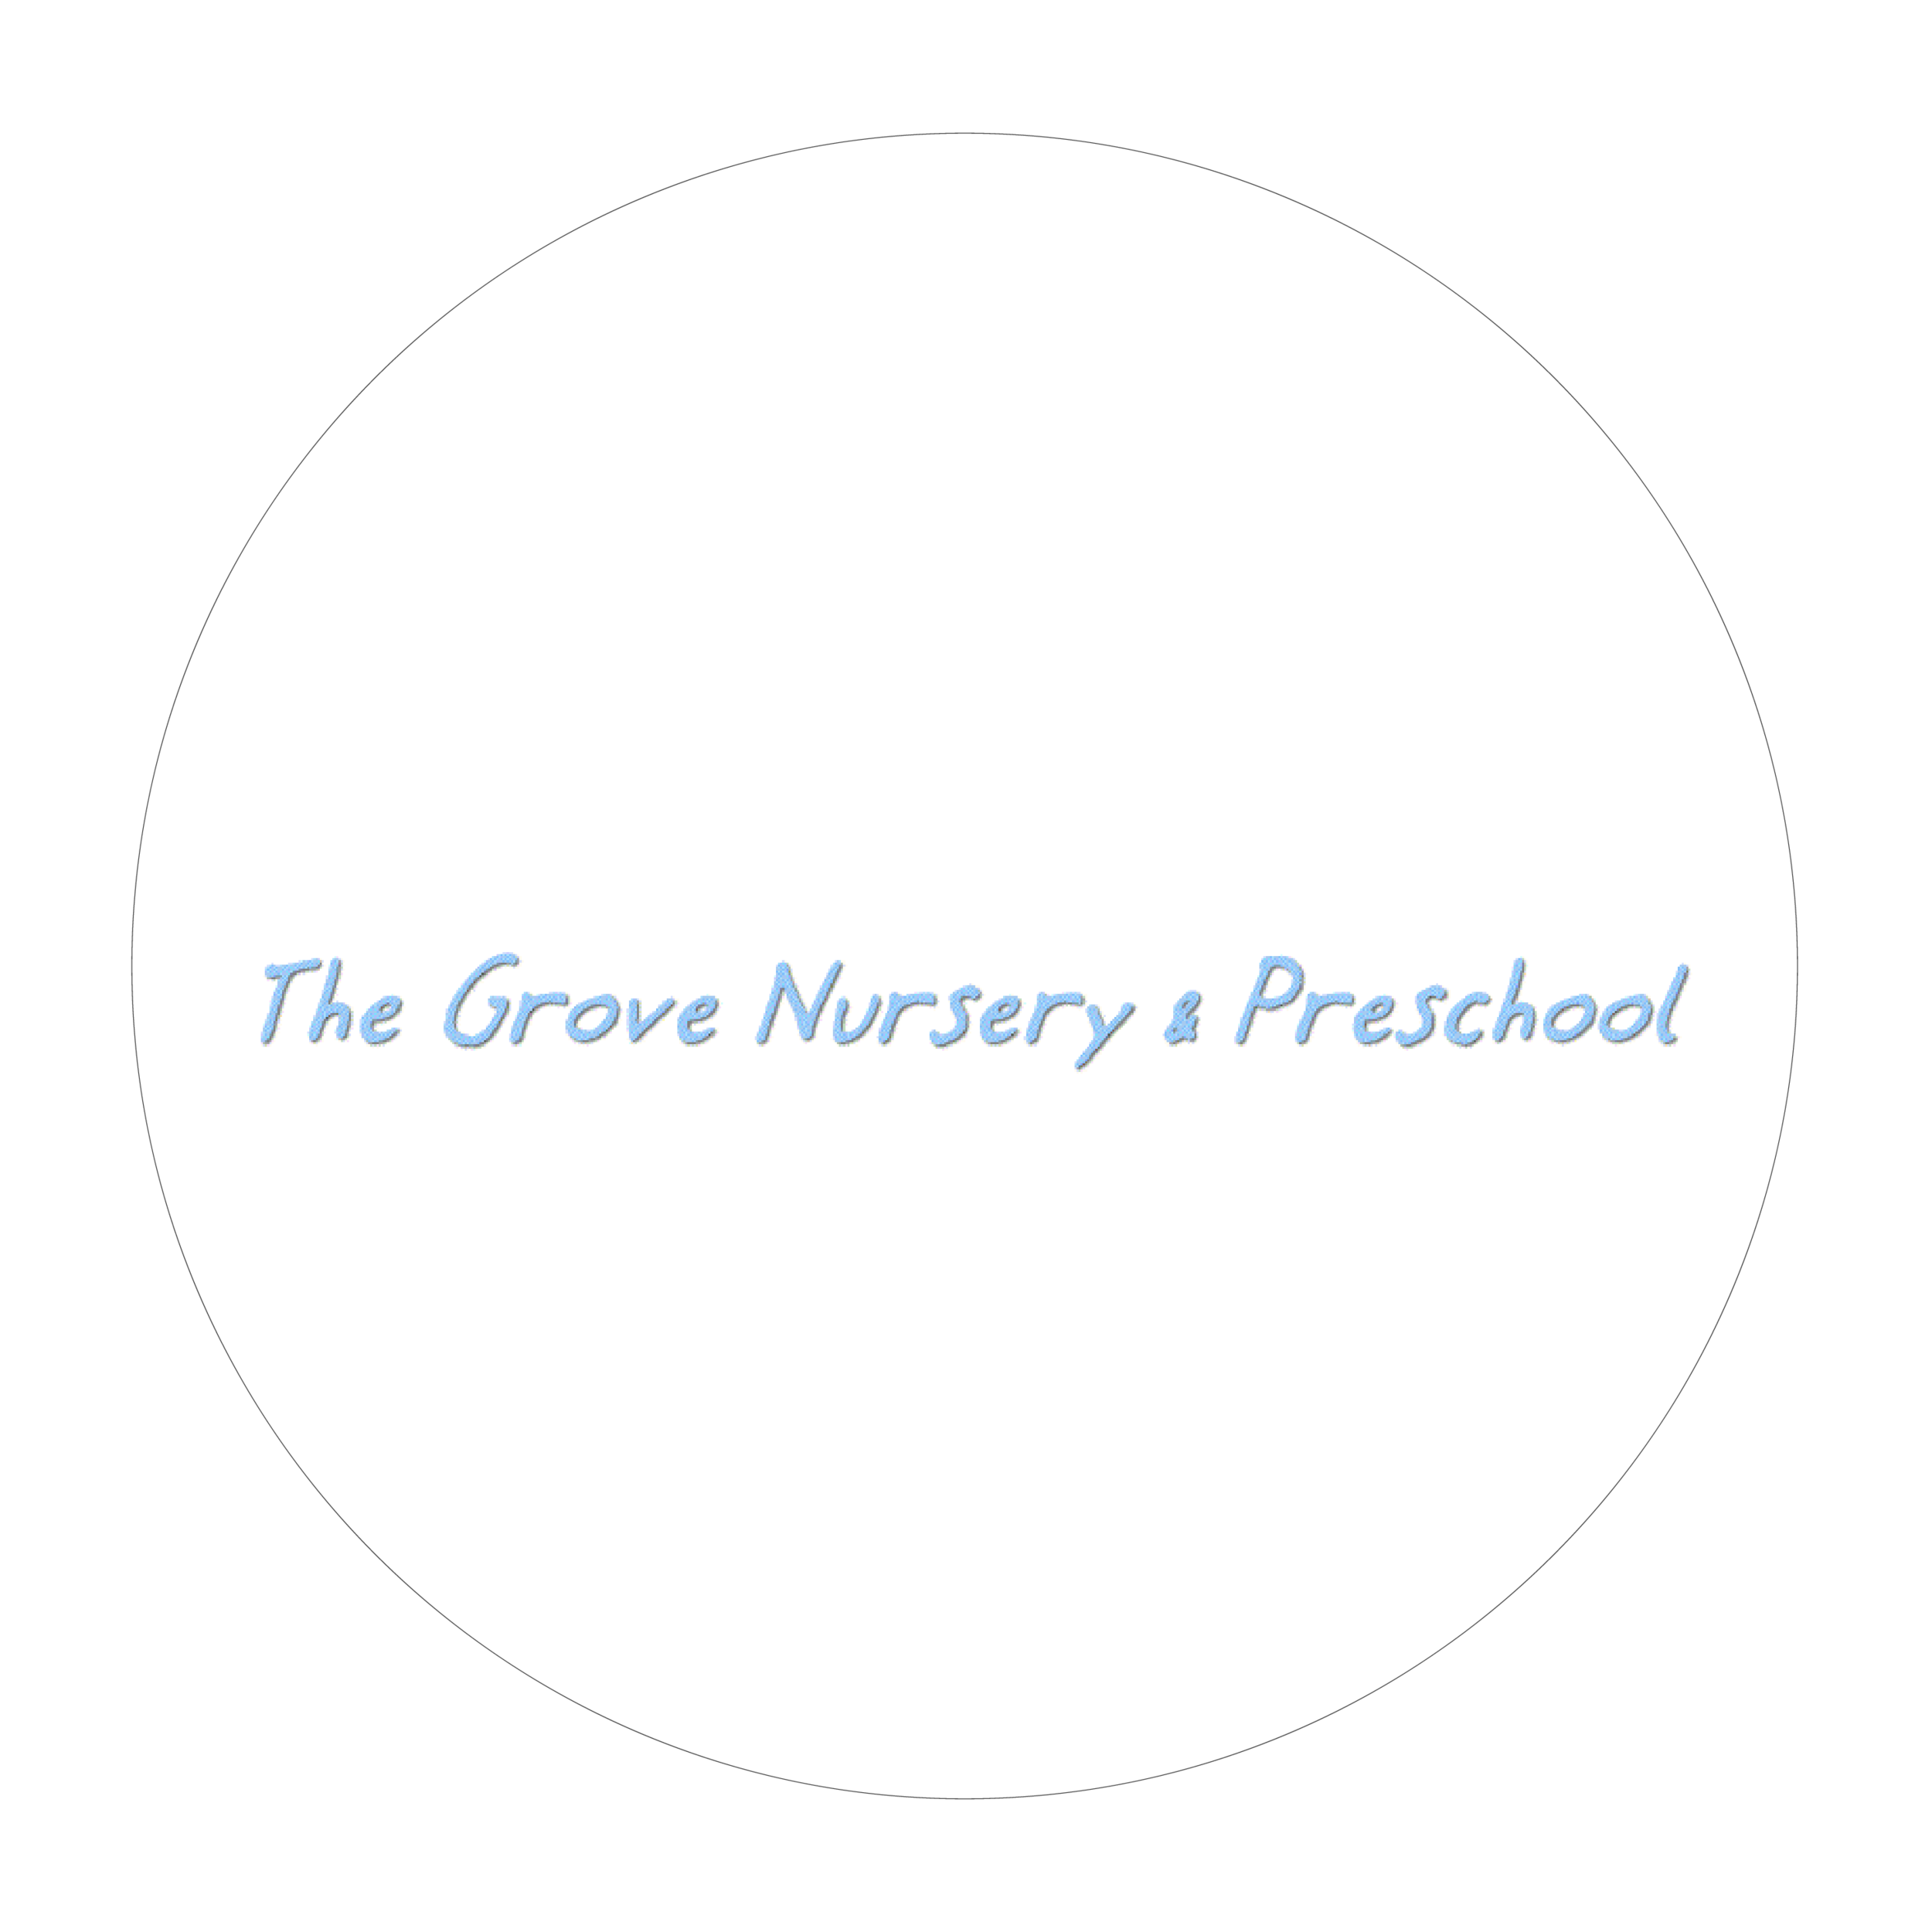 The Grove Nursery